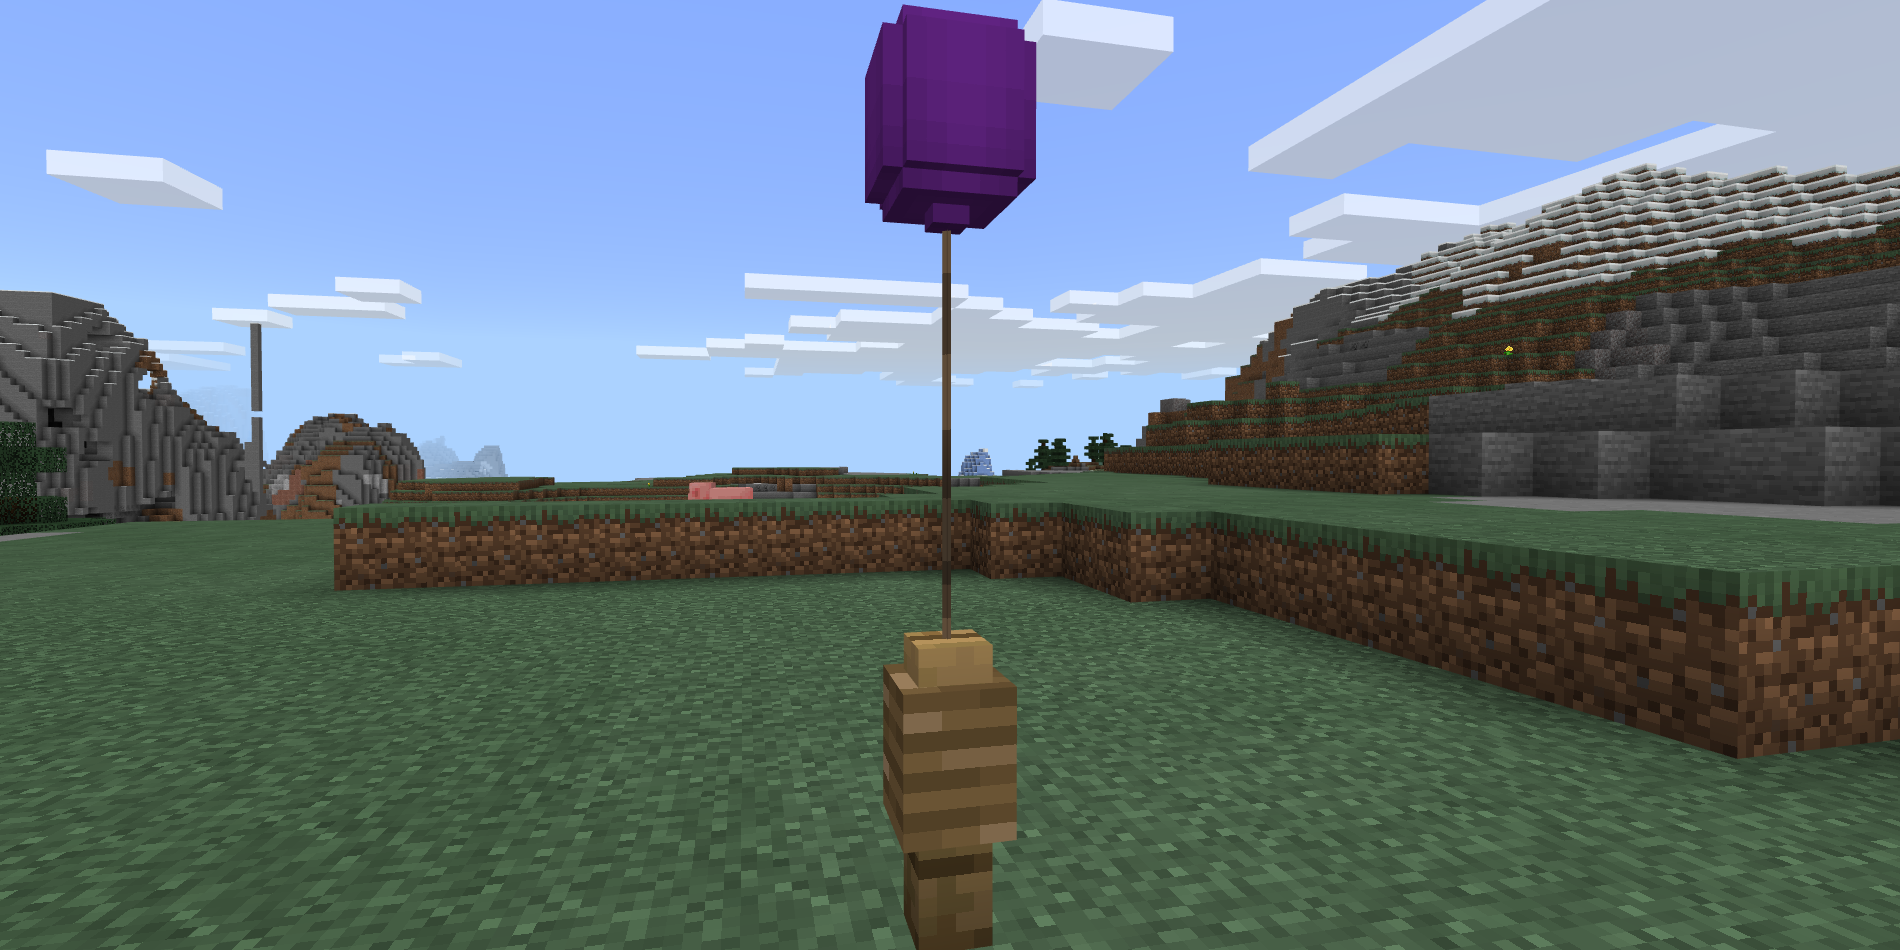 Minecraft Balloon